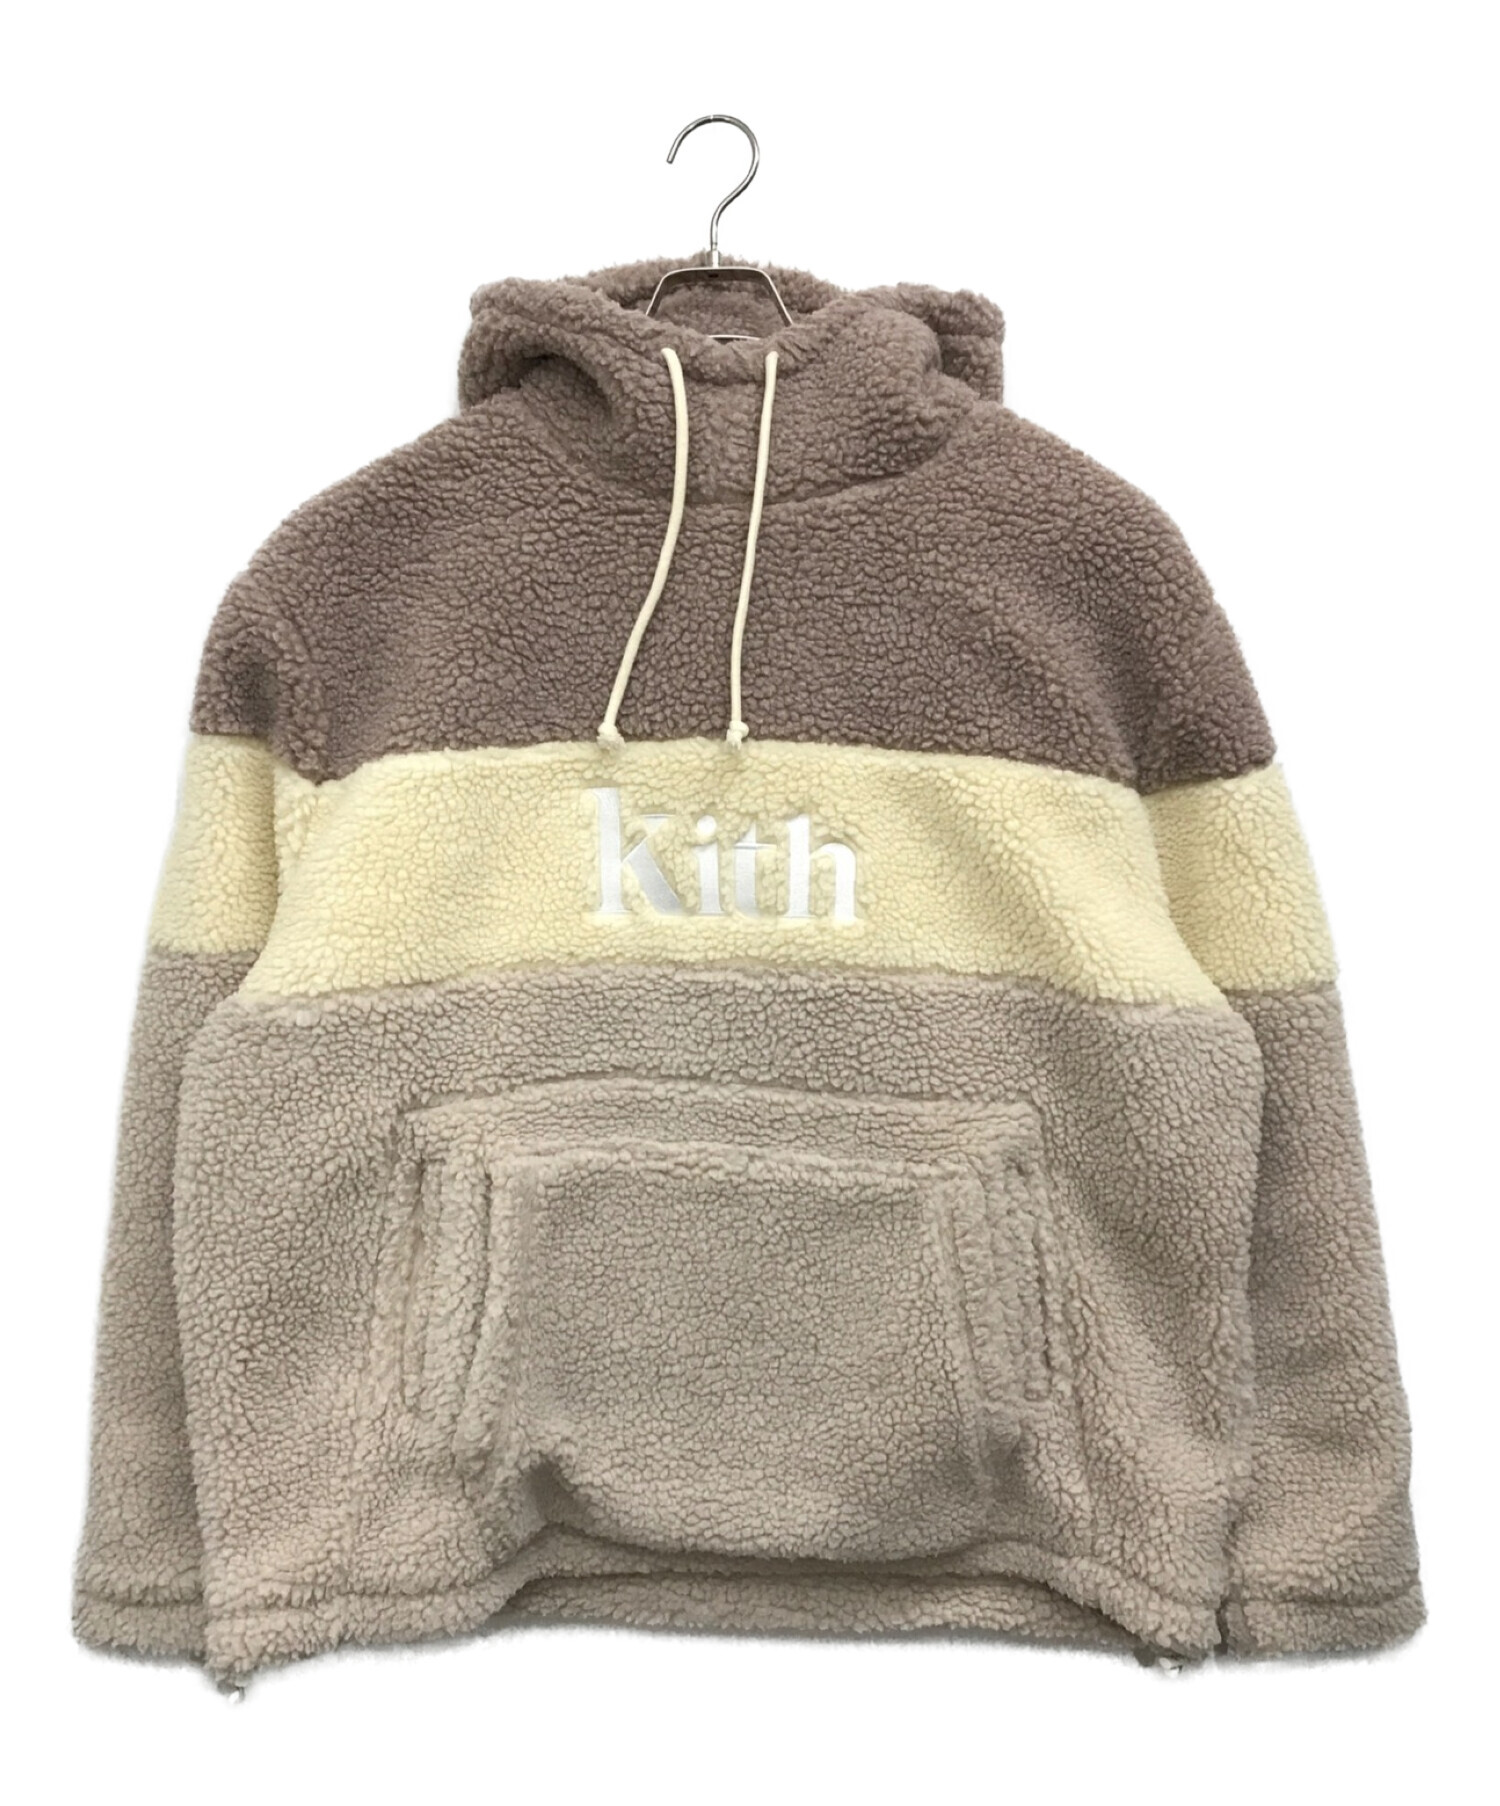 KITH (キス) sherpa double pocket hoodie　シェルパ ダブル ポケット フーディー ボアパーカー ベージュ サイズ:XL